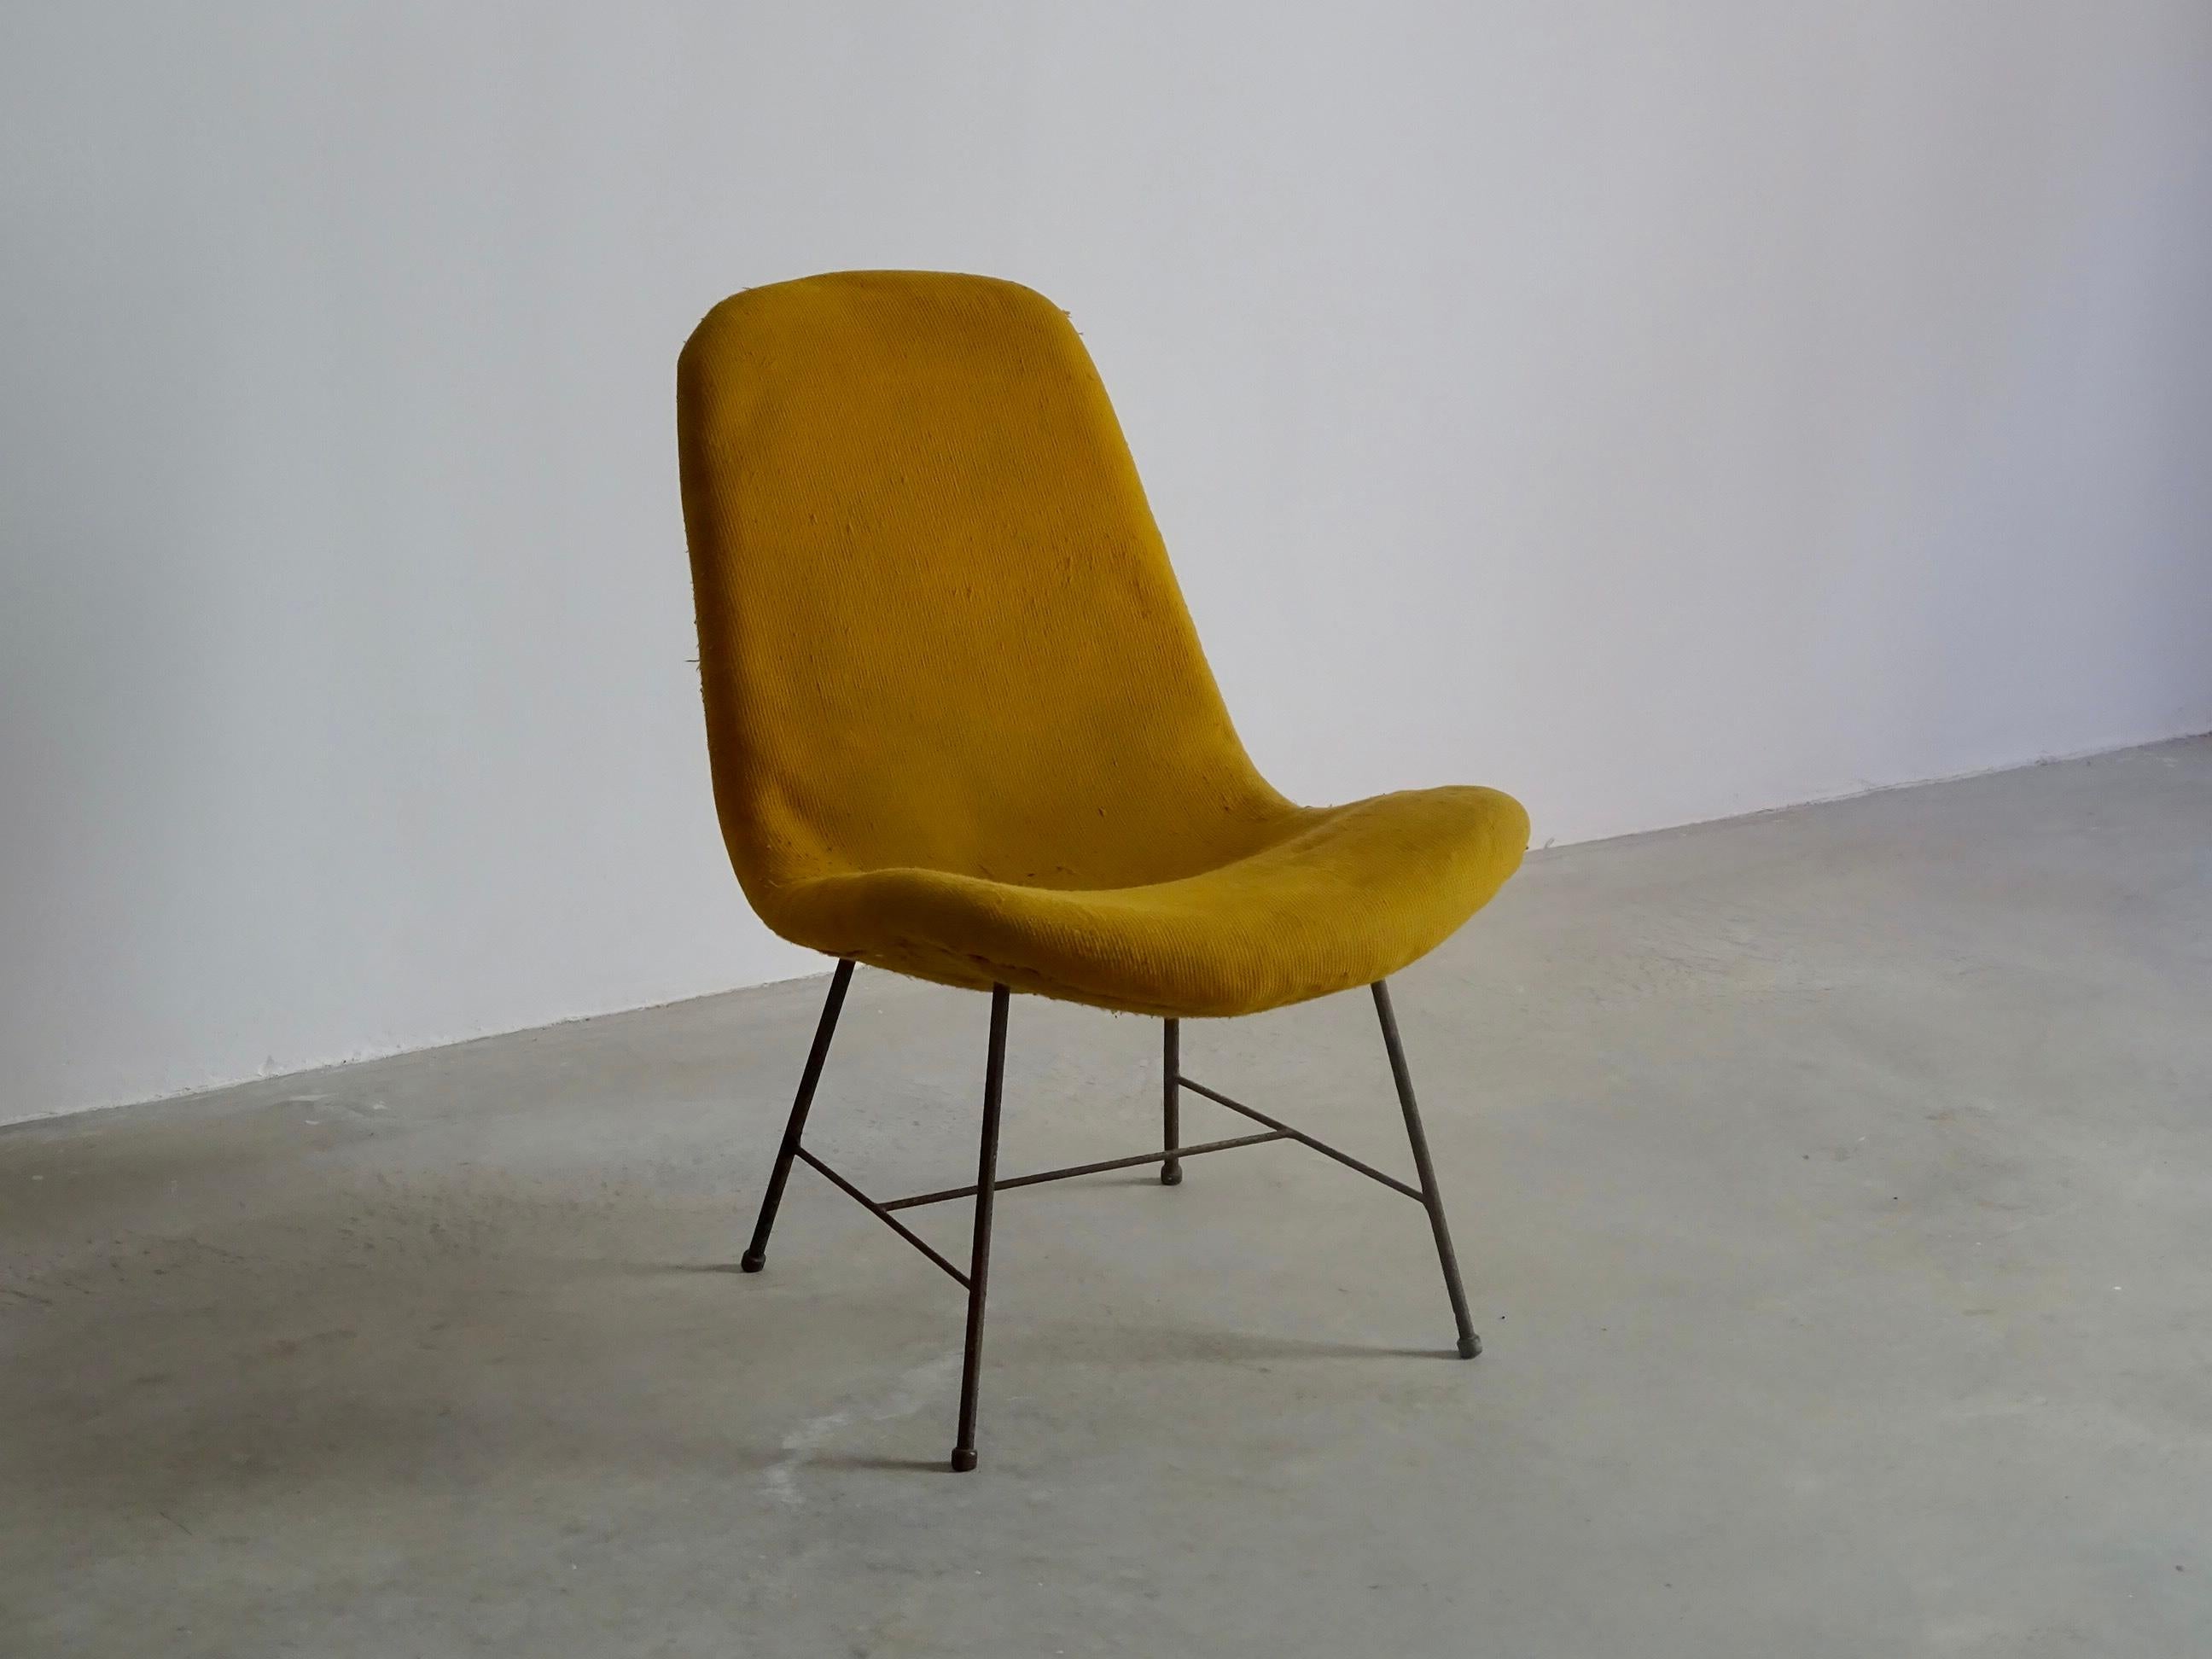 Chaise longue conçue par Carlo Hauner, produite par 